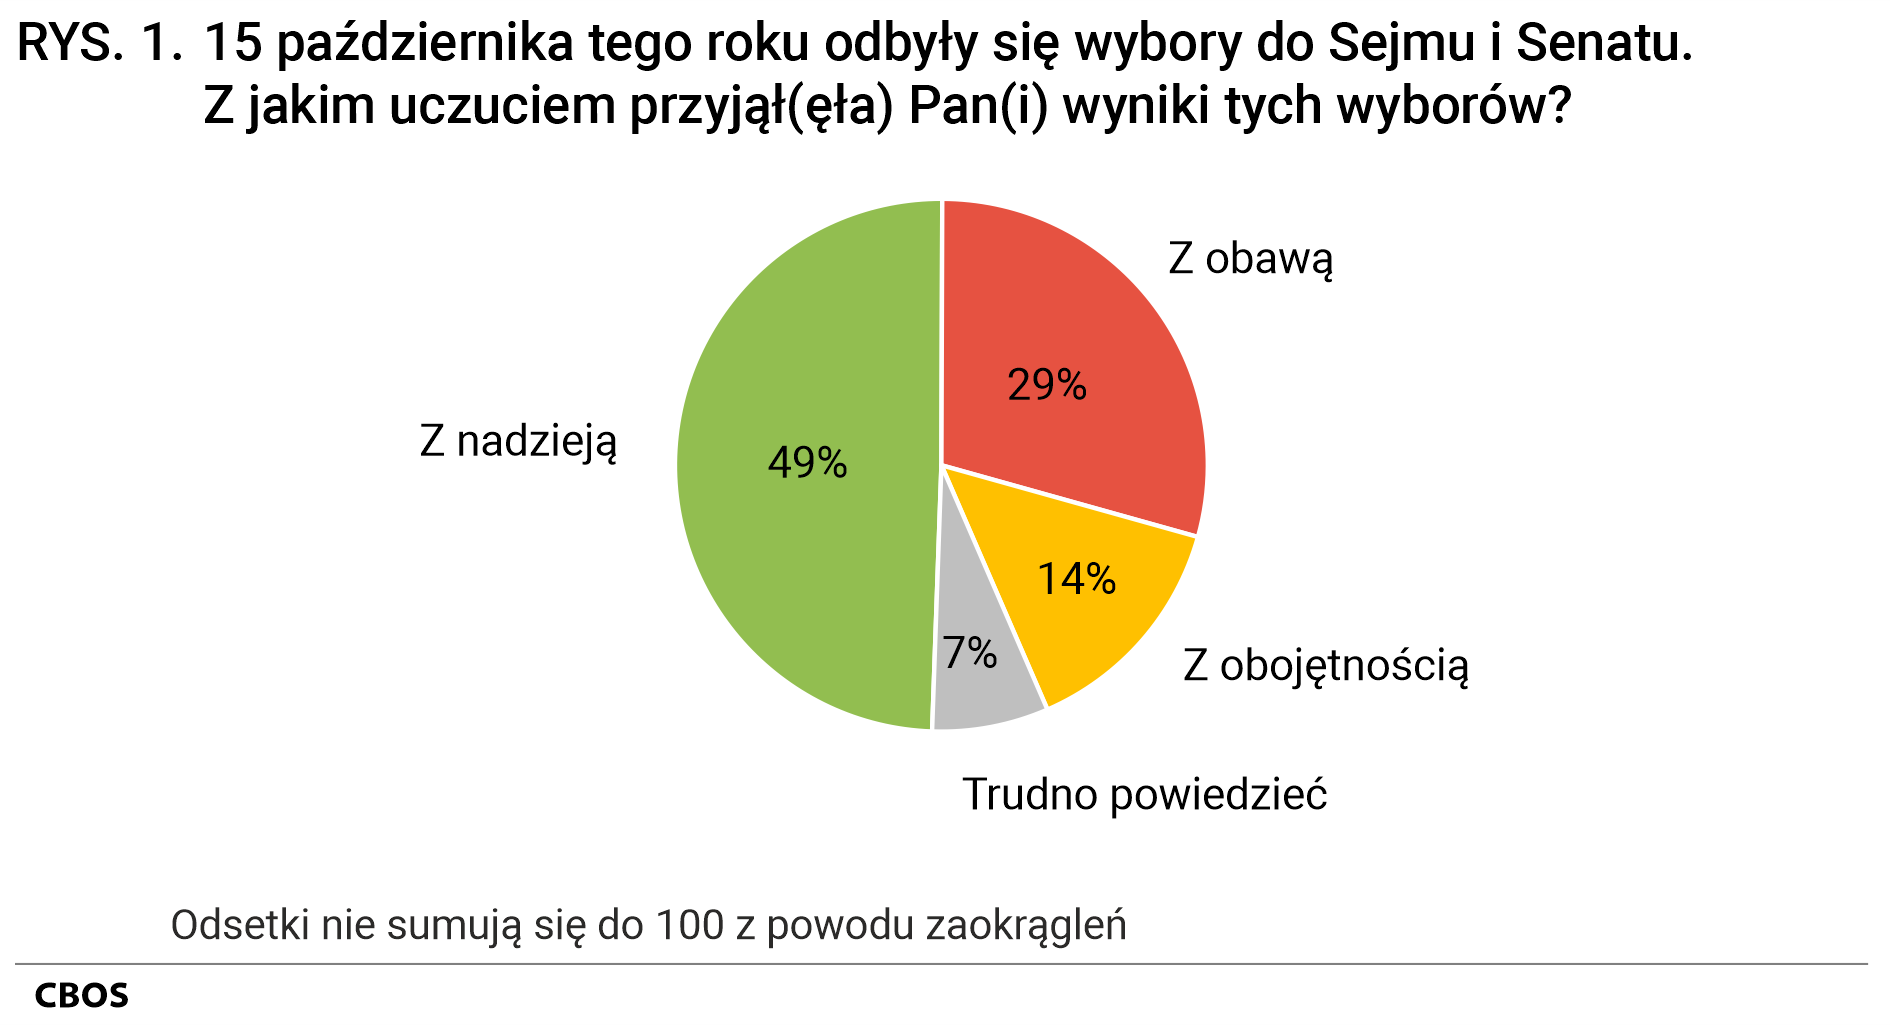 Rysunek 1 - 15 października 2023 roku odbyły się wybory do Sejmu i Senatu. Z jakim uczuciem przyjął Pan (przyjęła Pani) wyniki tych wyborów? Z nadzieją 49%, z obawą 29%, z obojętnością 14%, Trudno powiedzieć 7%. Odsetki nie sumują się do 100 z powodu zaokrągleń.